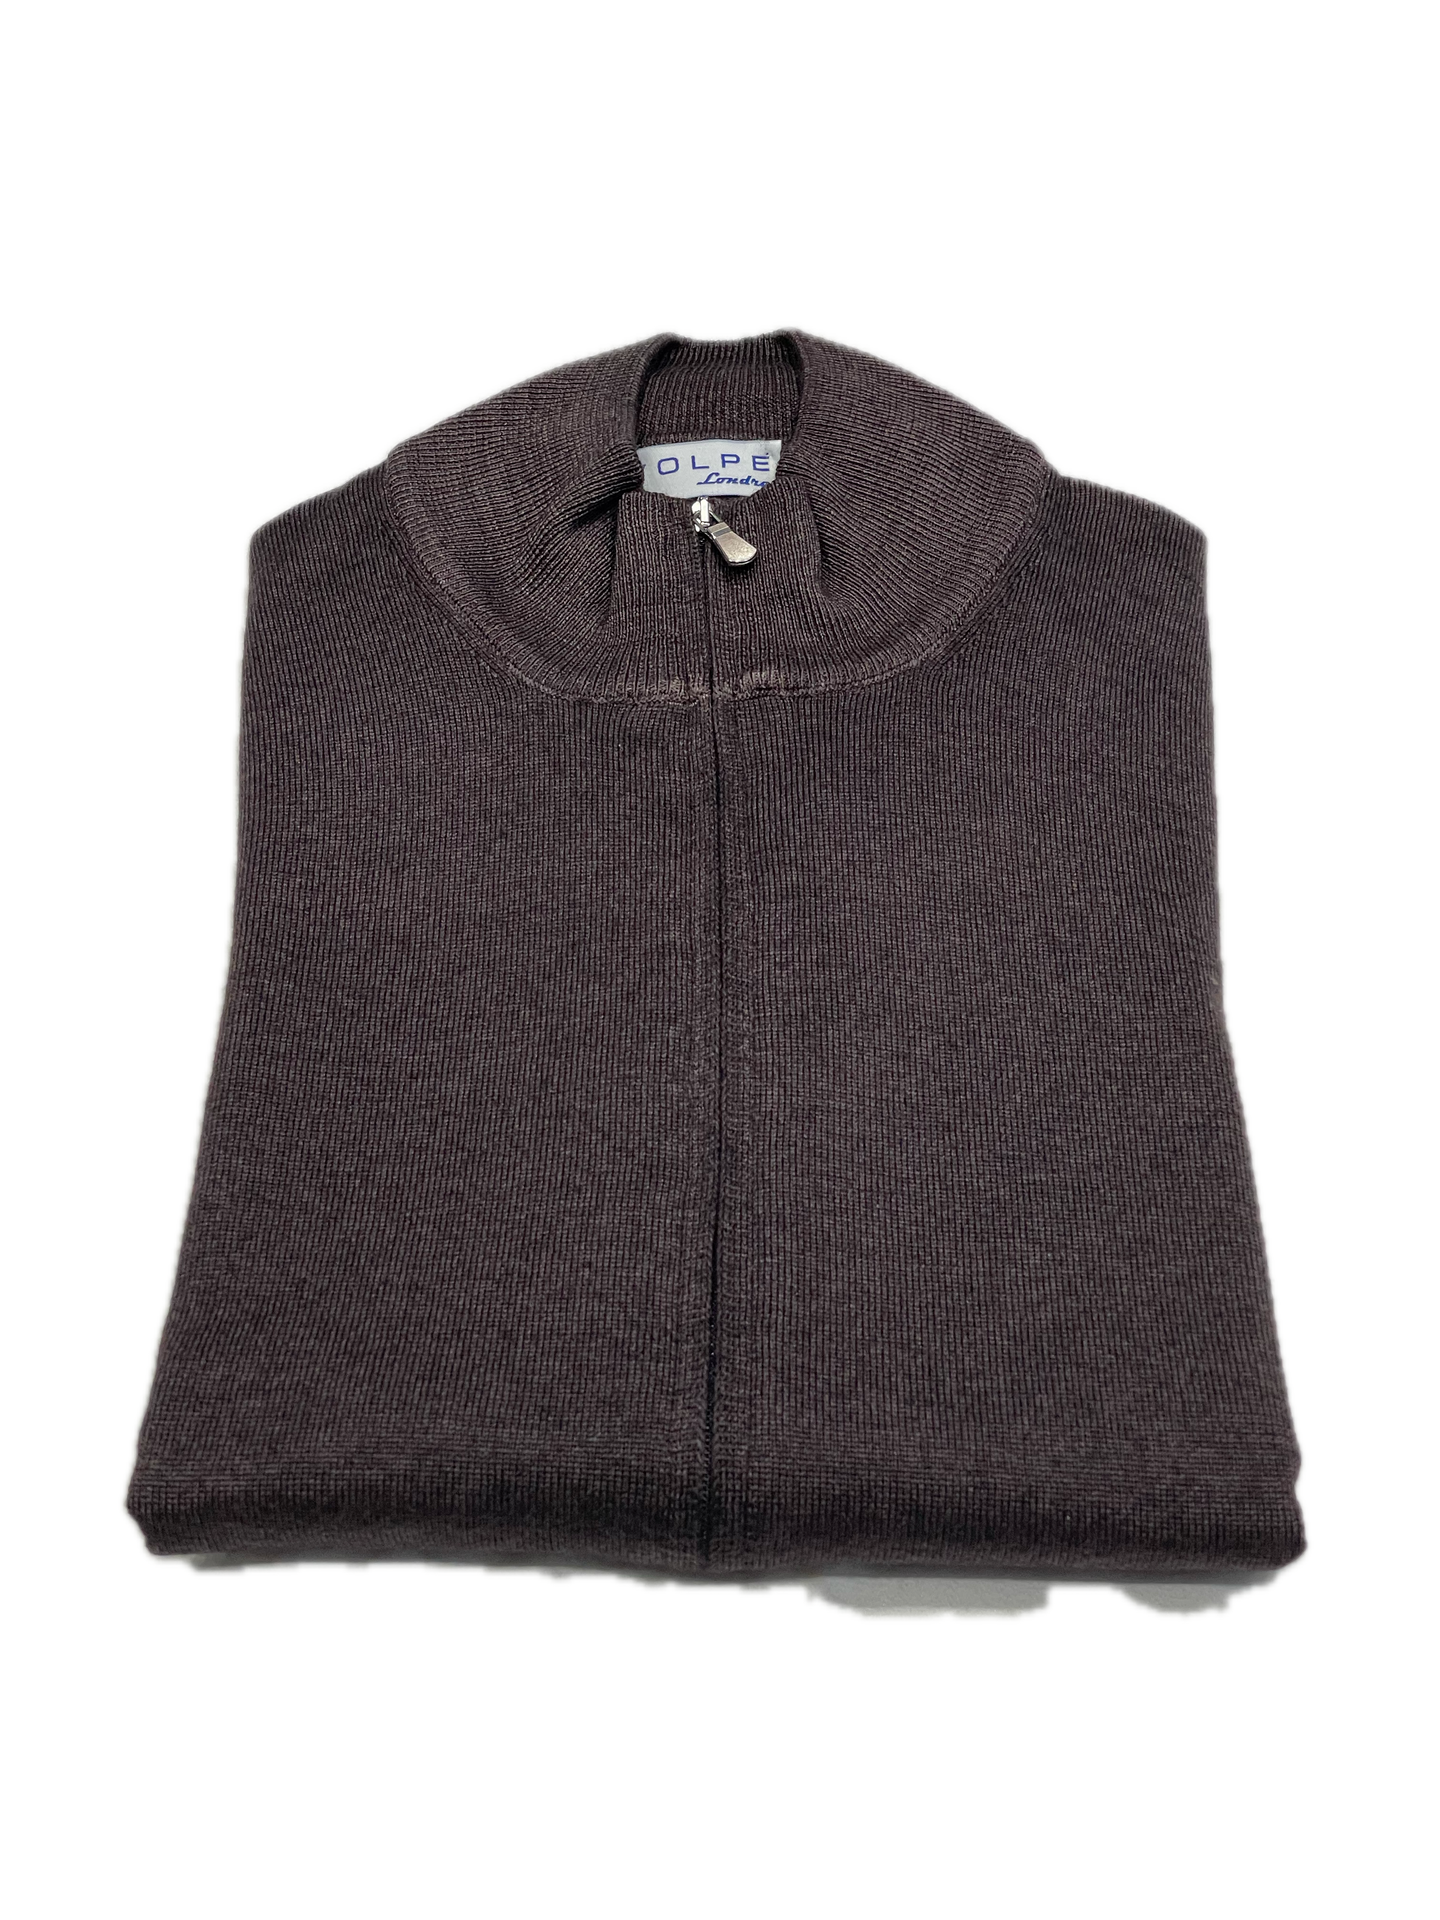 Full Zip sweater zip in brown vintage merino wool